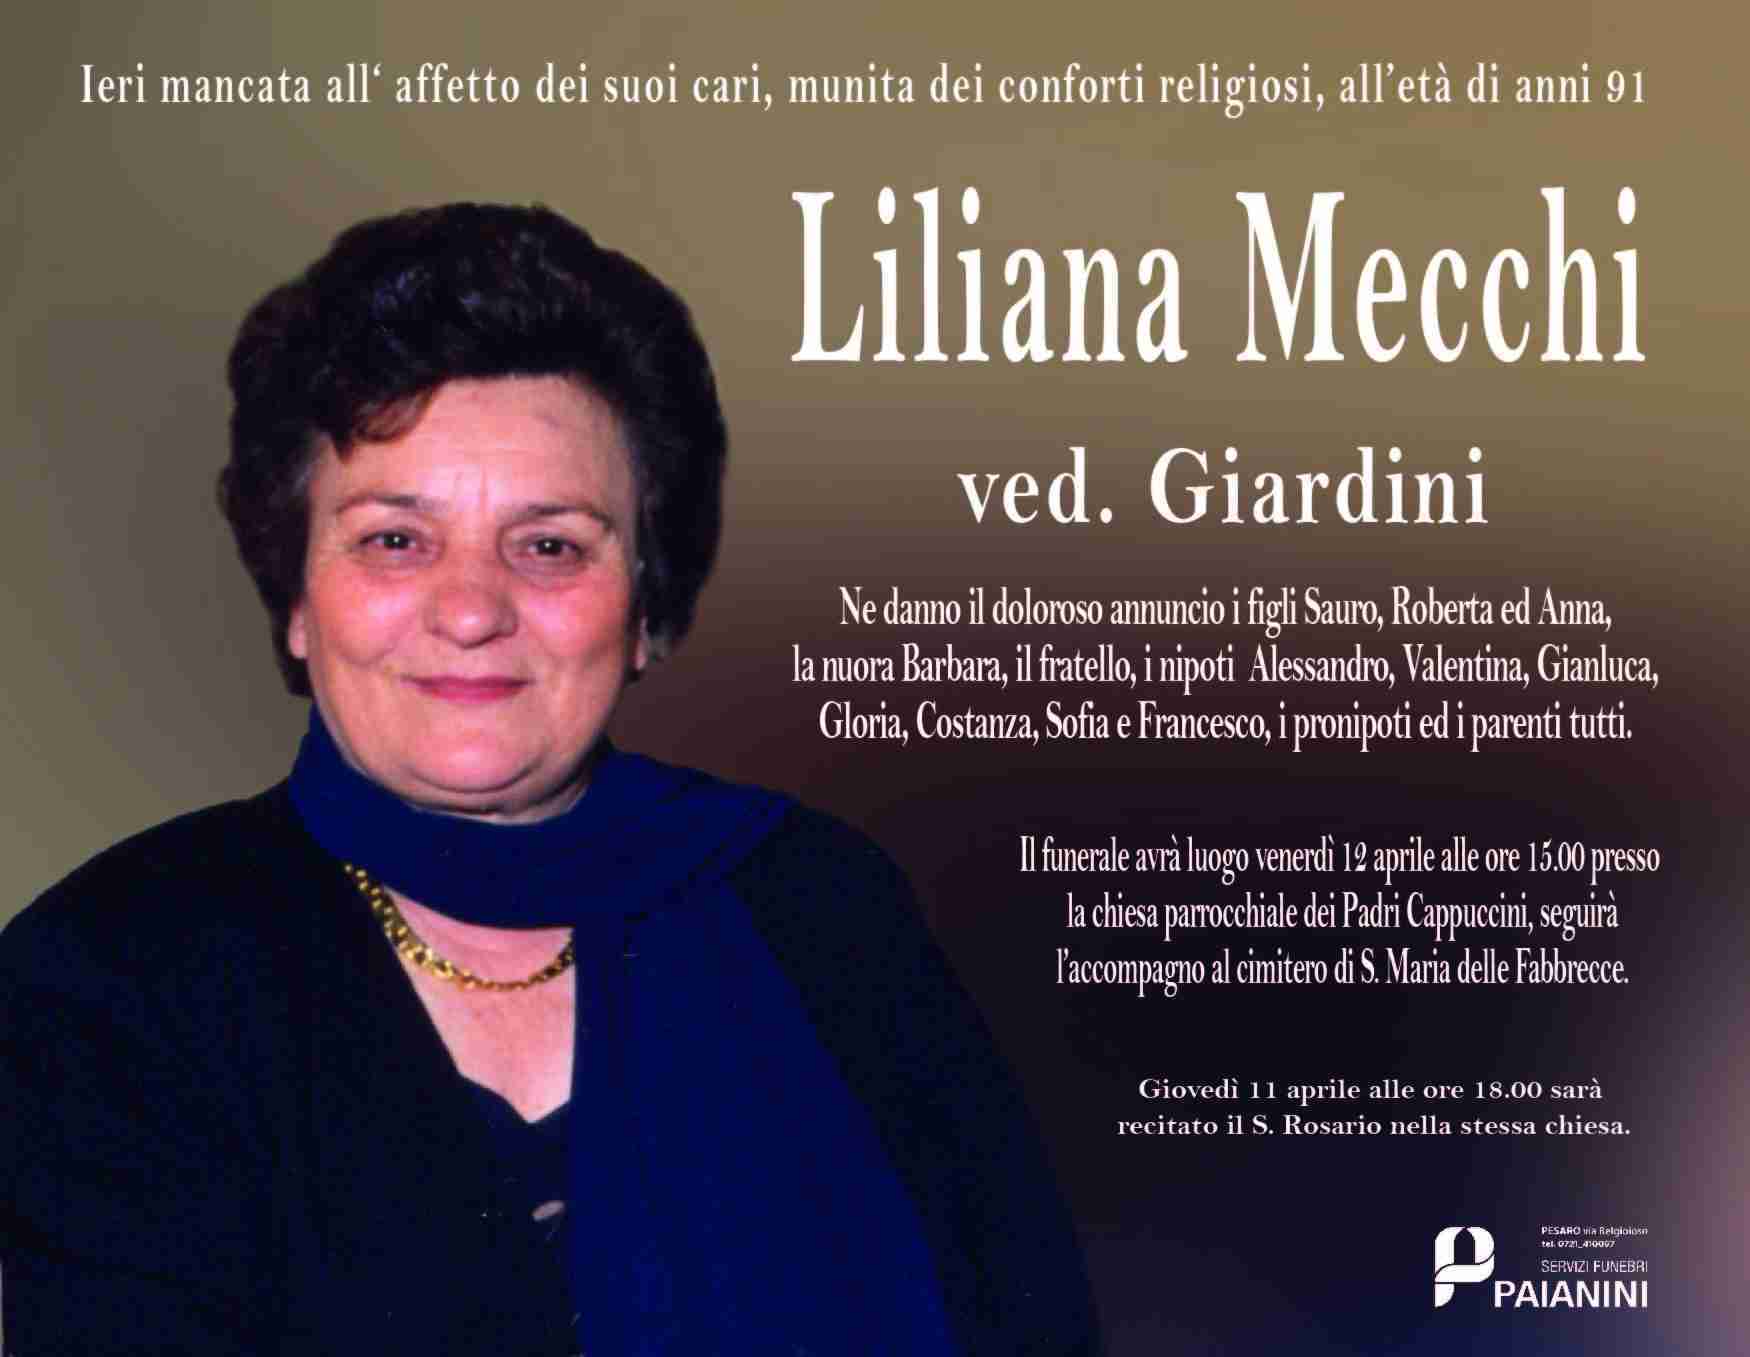 Liliana Mecchi